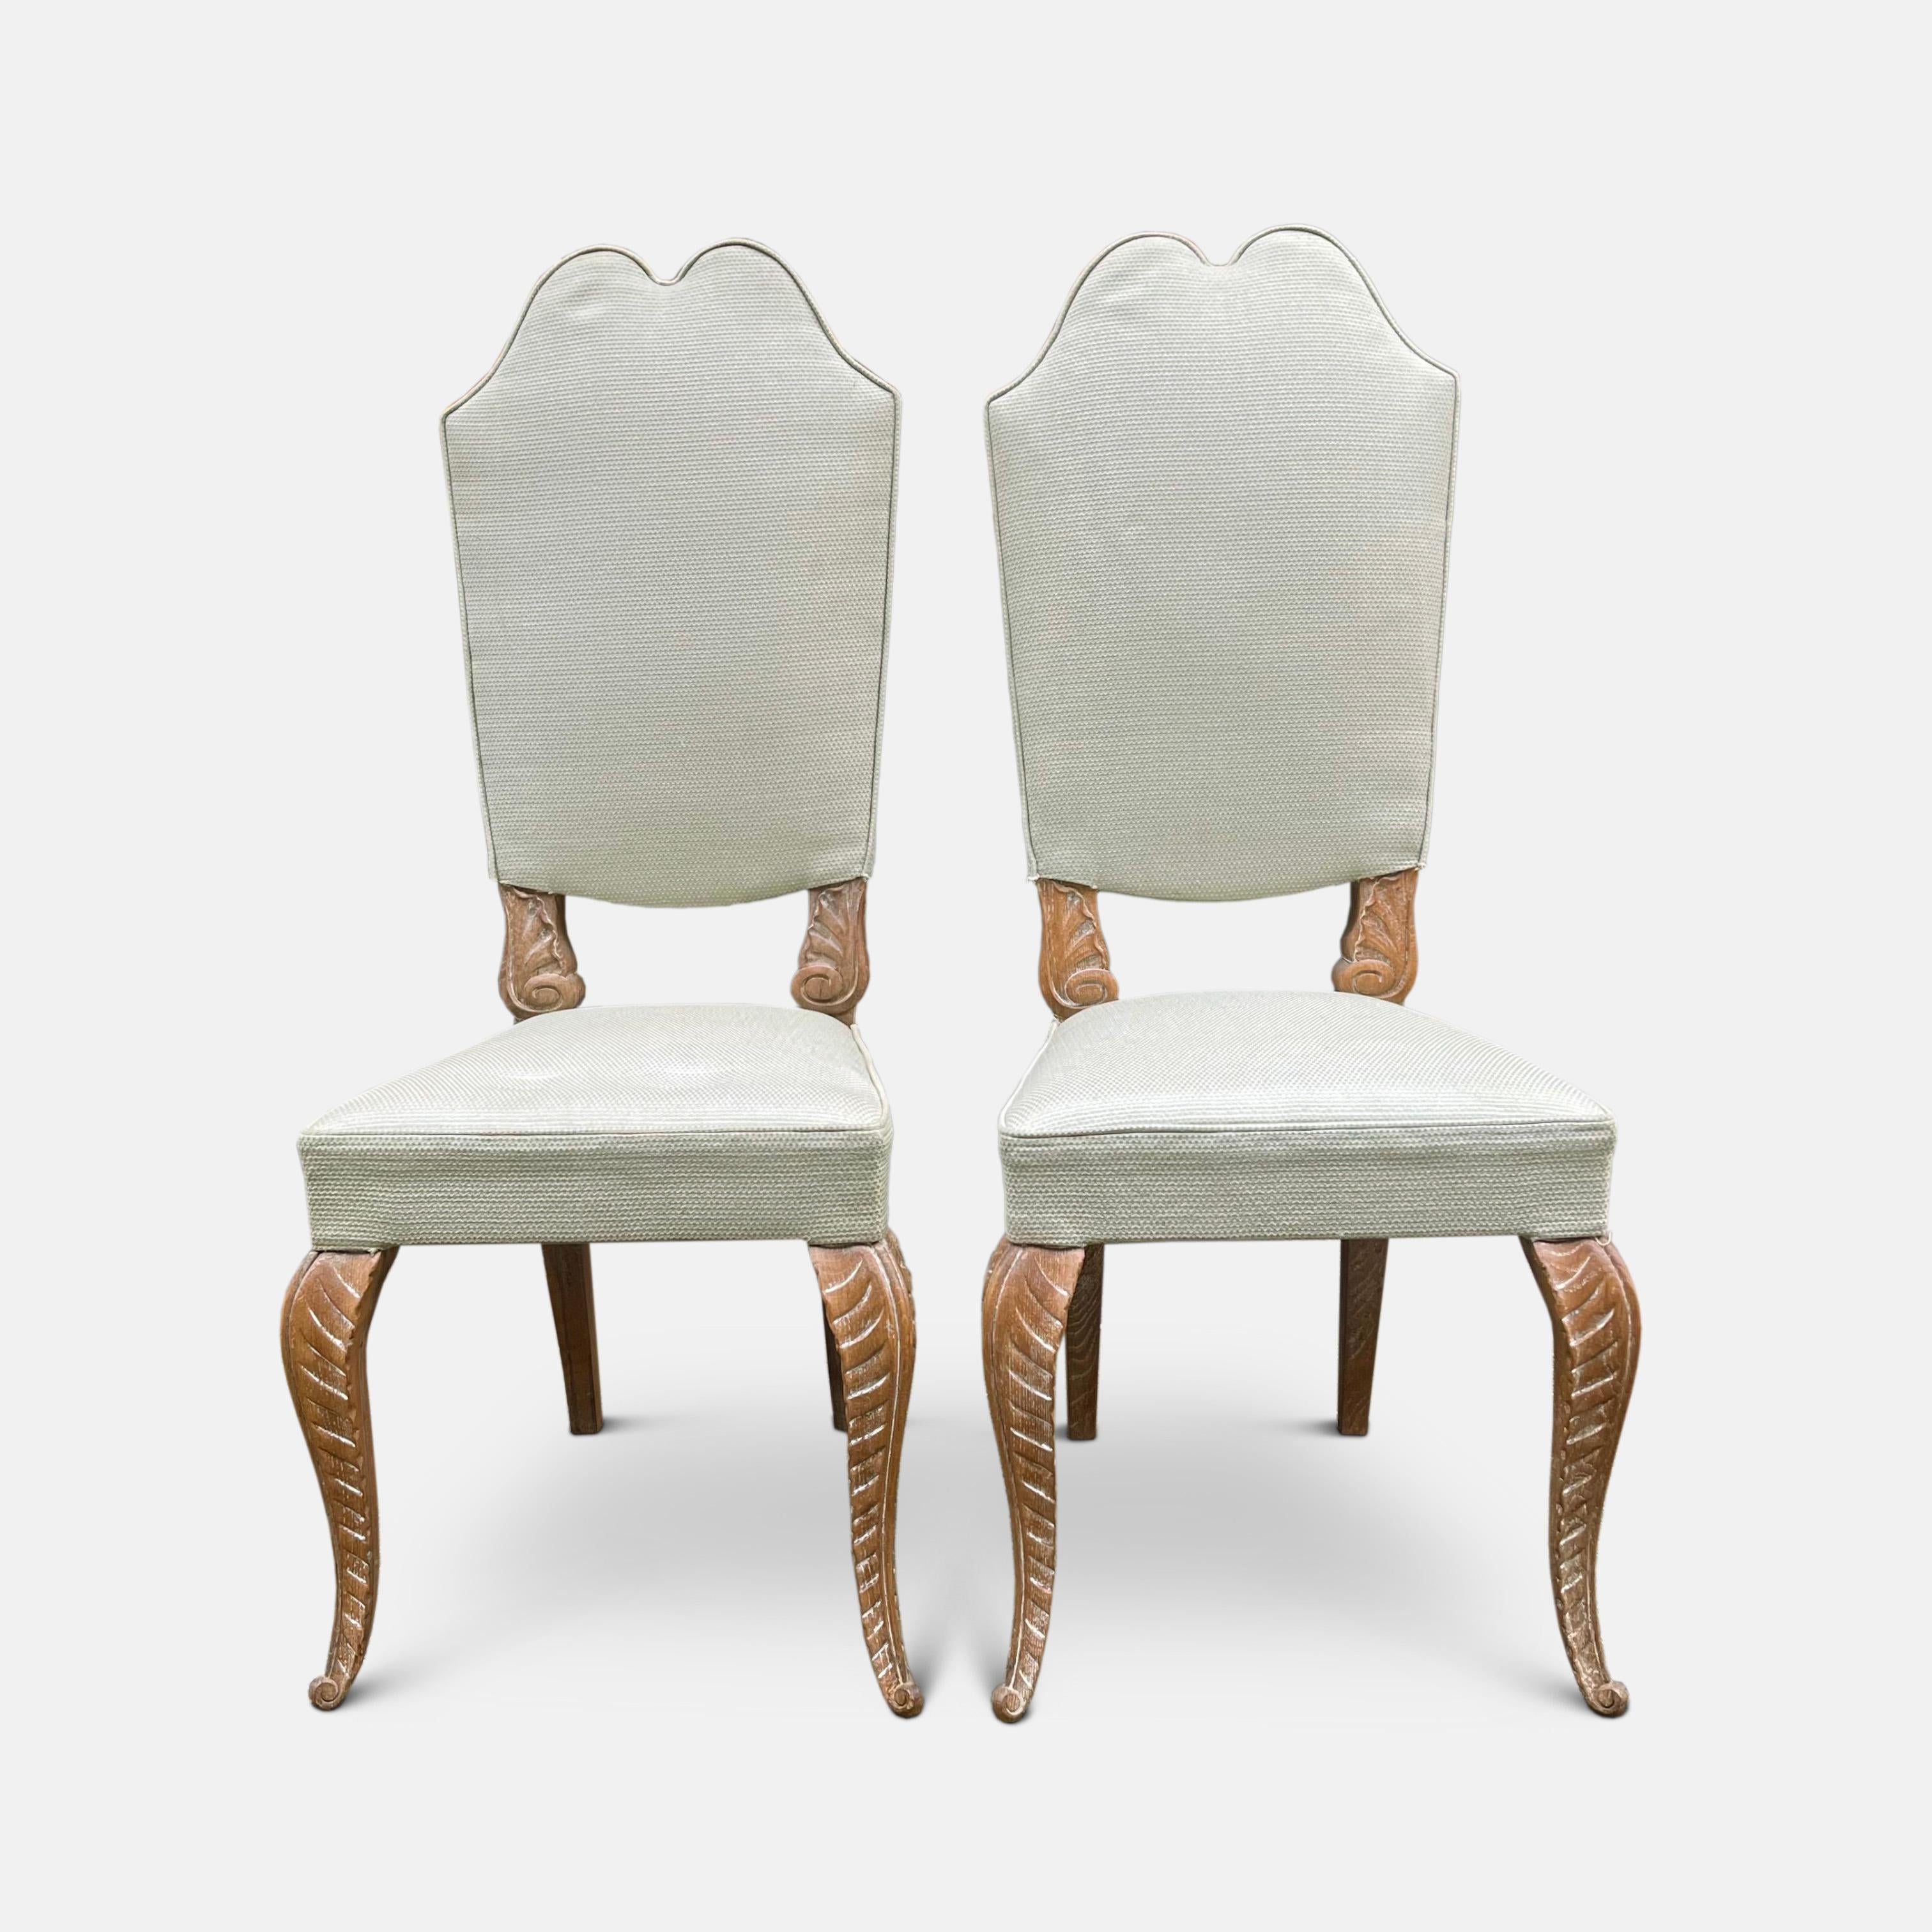 Ein Satz von acht Esszimmerstühlen aus gekalkter Eiche von Maison Jansen aus den 1940er Jahren mit hohen, geraden Rückenlehnen, die oben wunderbar mit einem doppelten geschwungenen Bogen verziert sind. Die untere Zarge jeder Rückenlehne ist mit